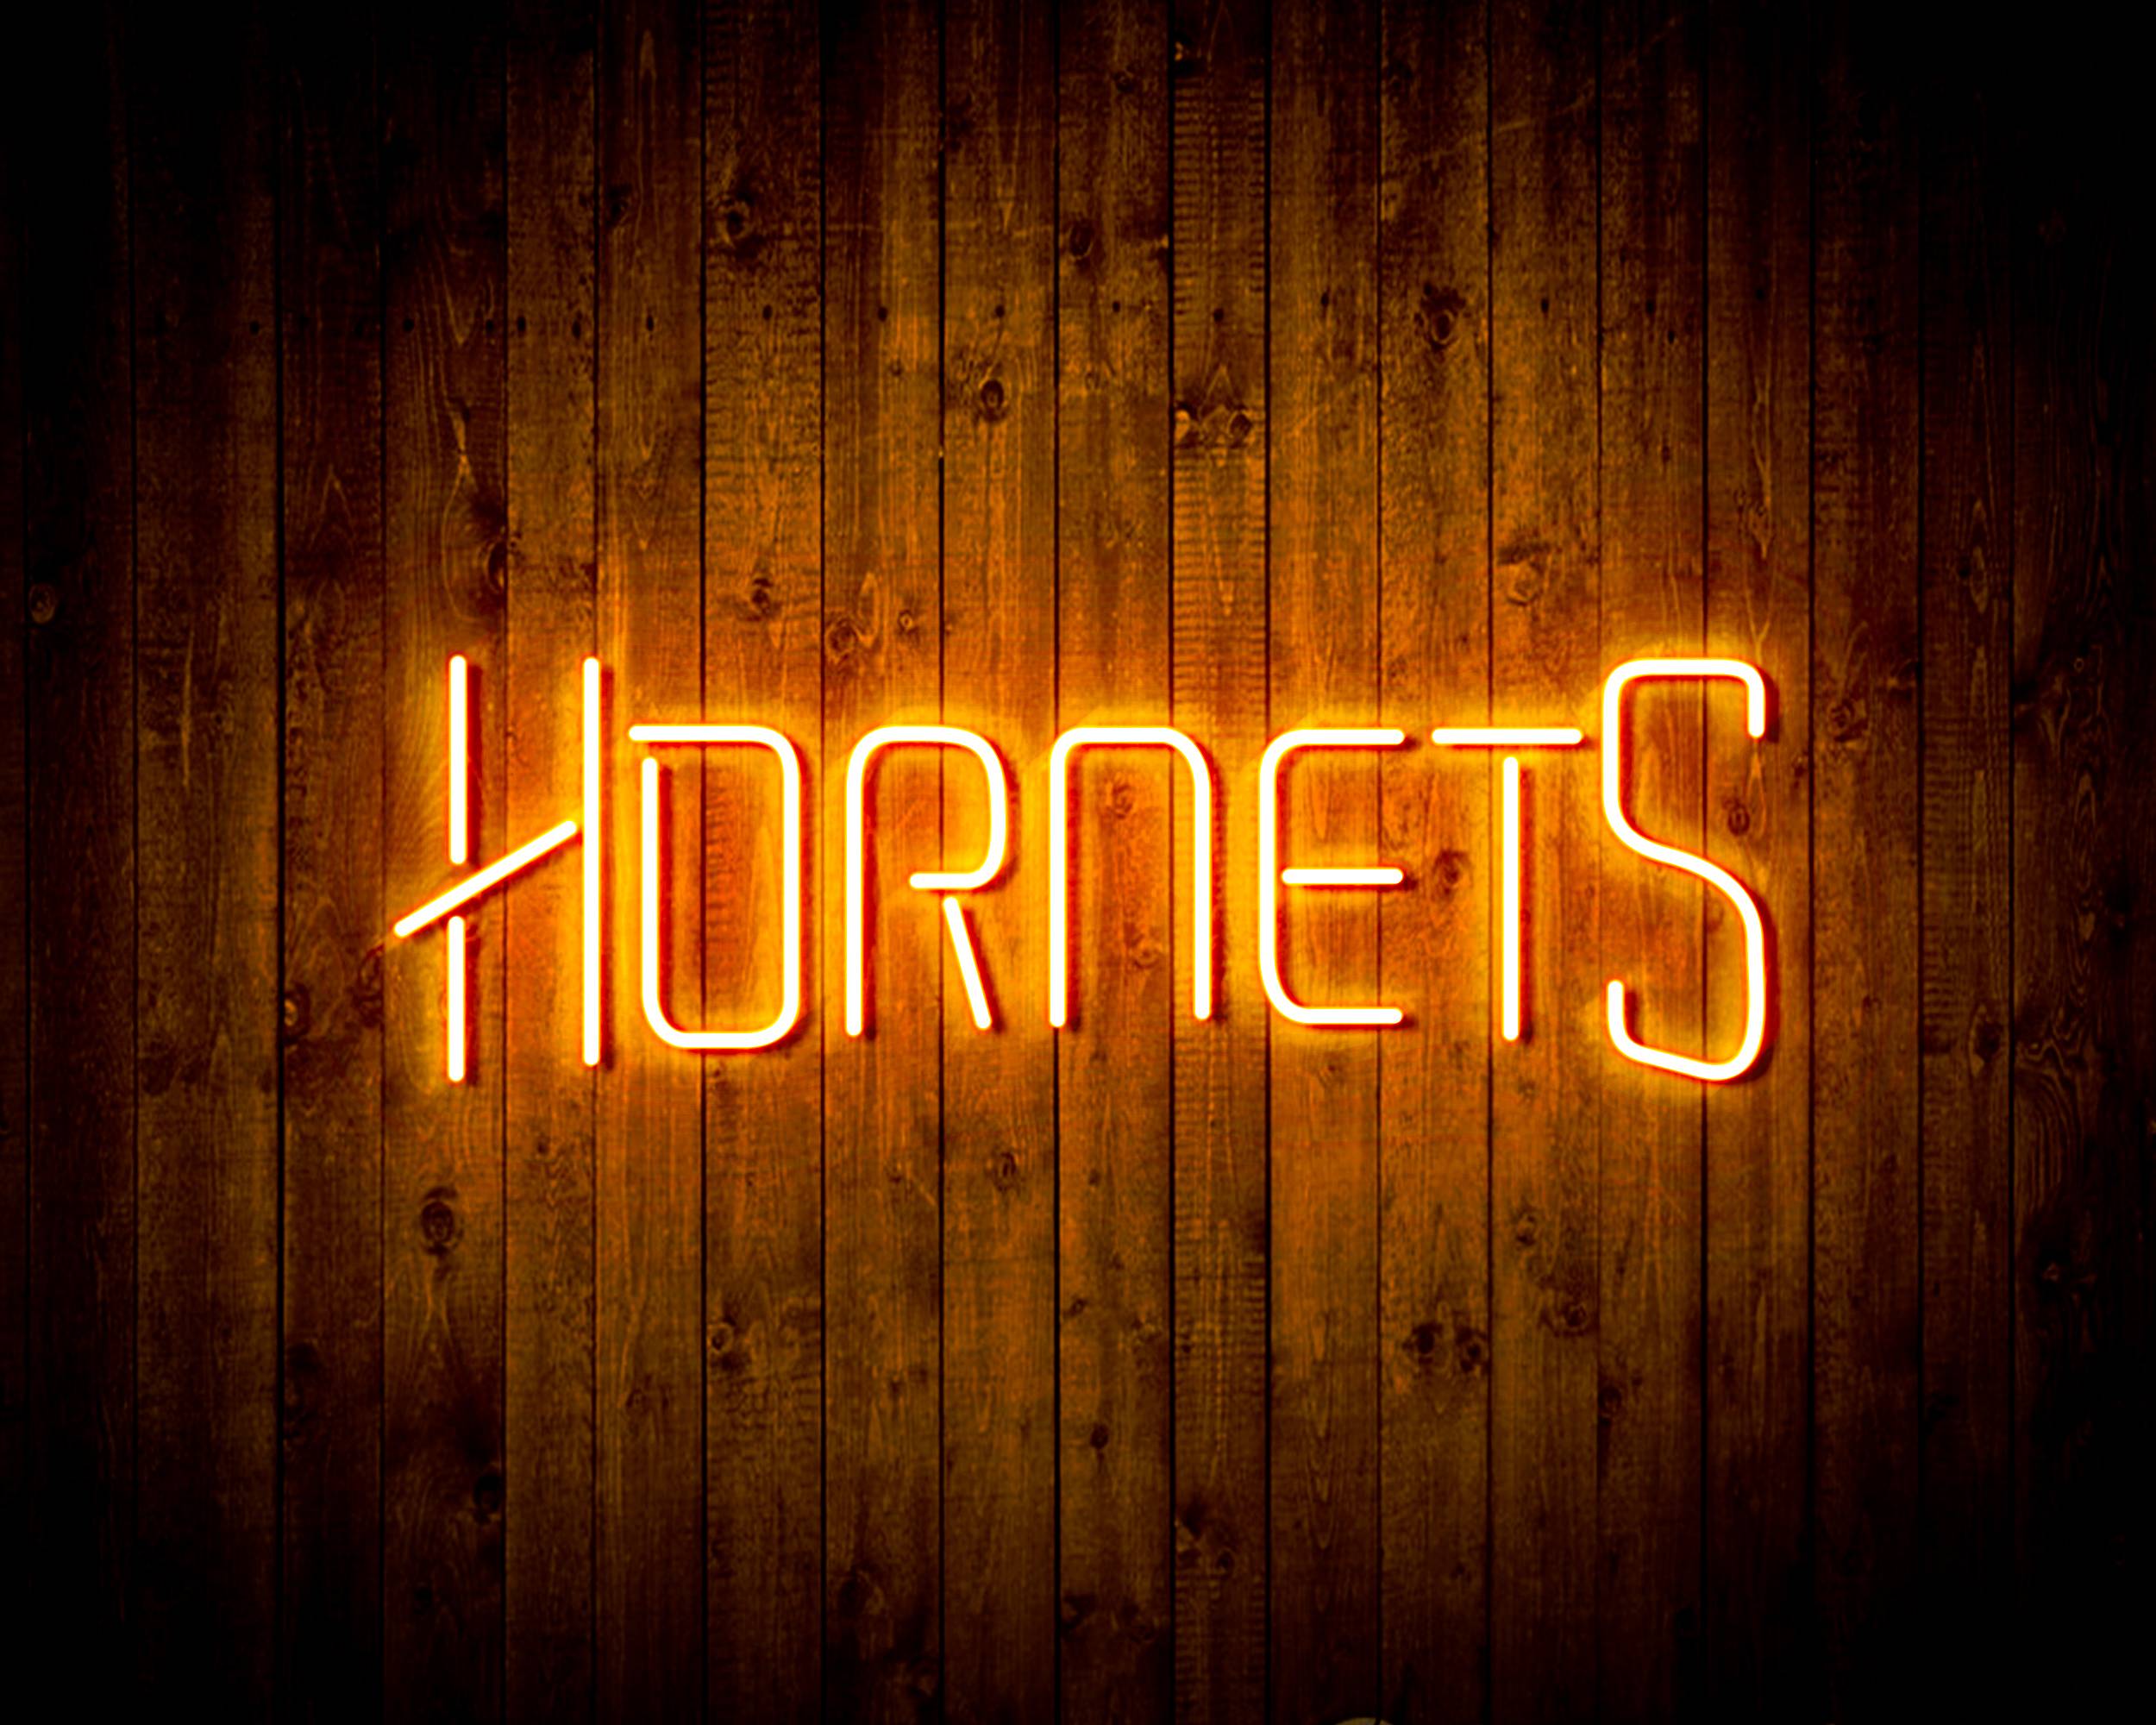 NBA Charlotte Hornets Bar Neon Flex LED Sign